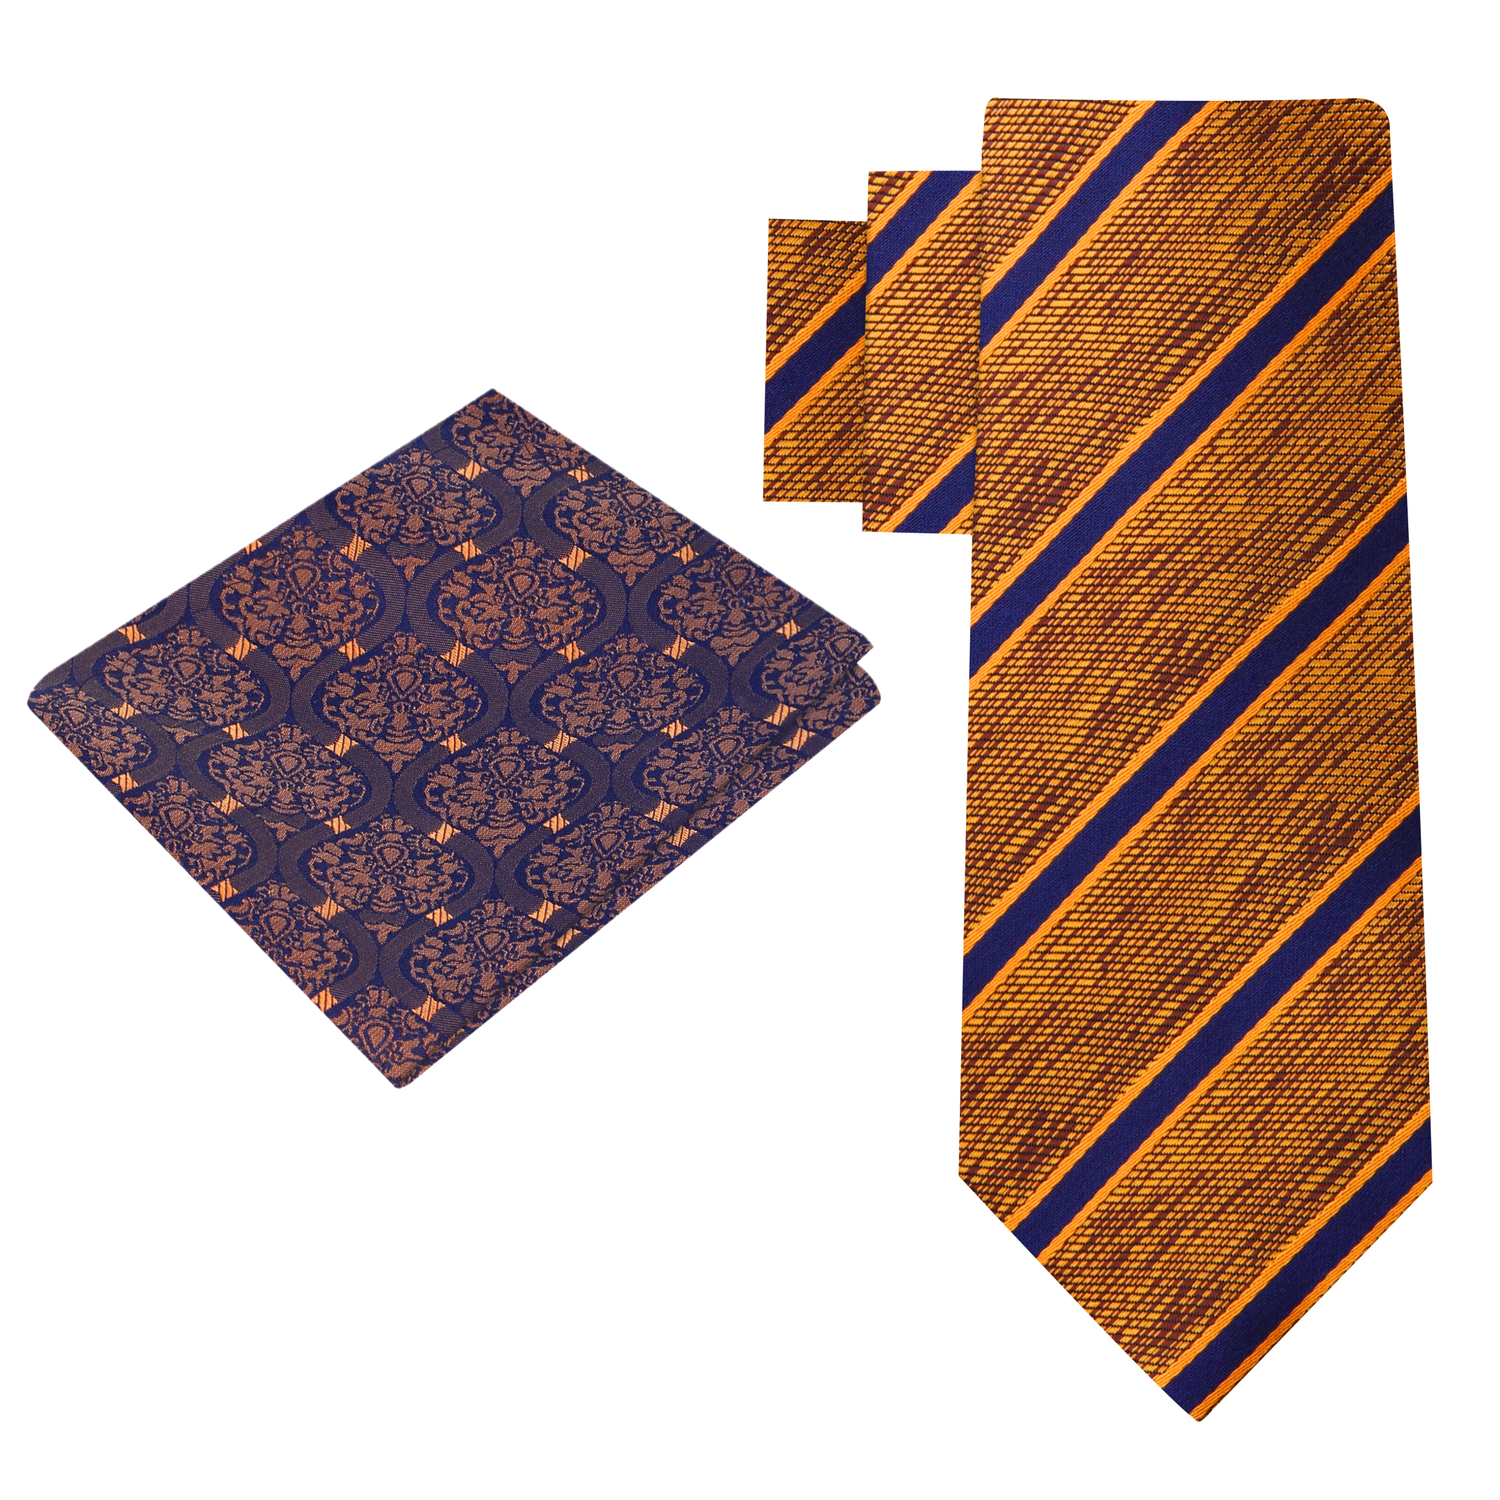 Alt View: Orange, Brown, Blue Stripe Necktie with Blue, Orange Abstract Square